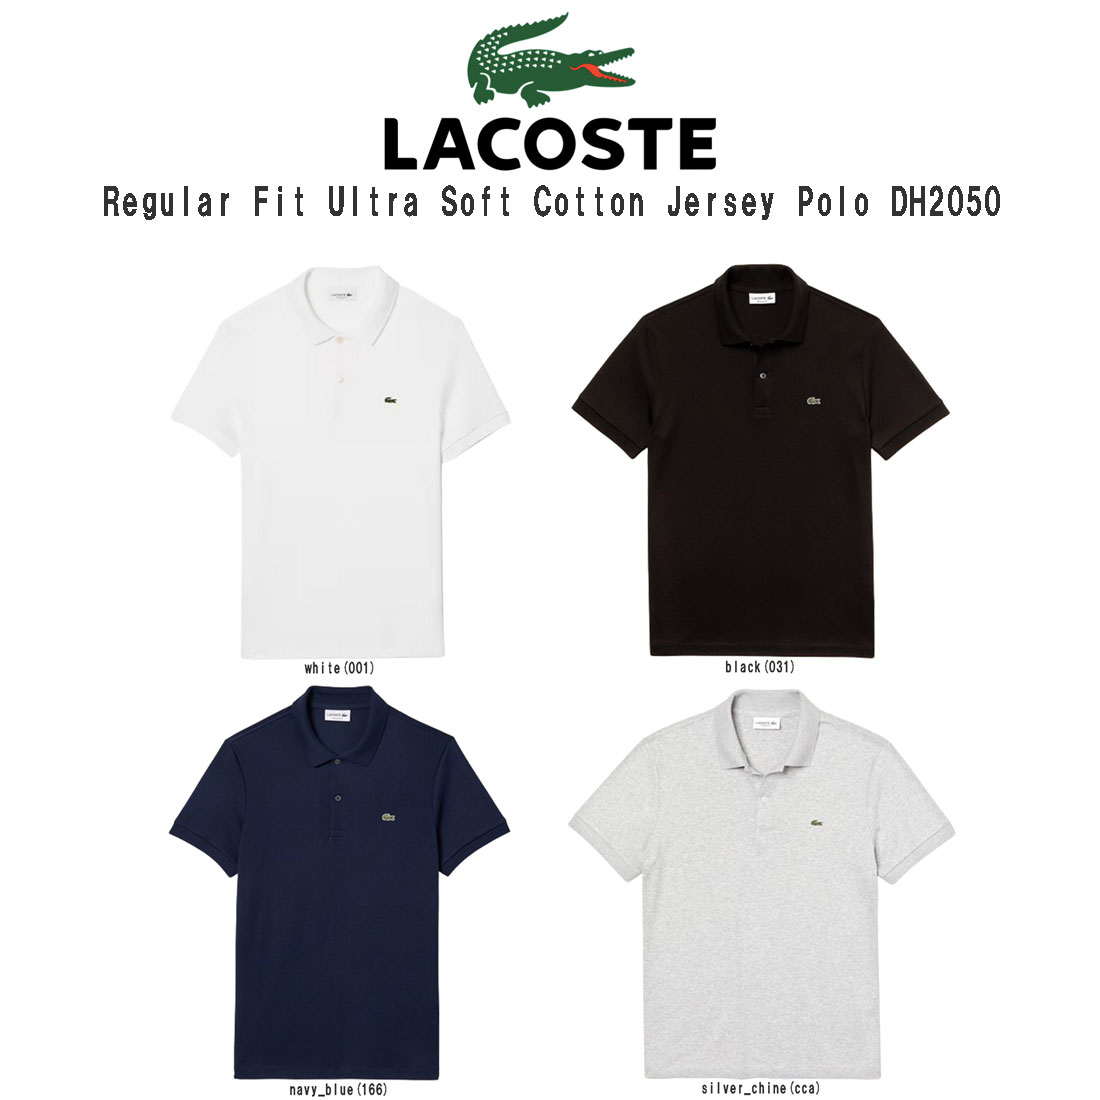 ラコステLACOSTE ポロシャツ レギュラーフィット テニス ゴルフ メンズ 男性 半袖 Regular Fit Ultra Soft Cotton Jersey Polo DH2050